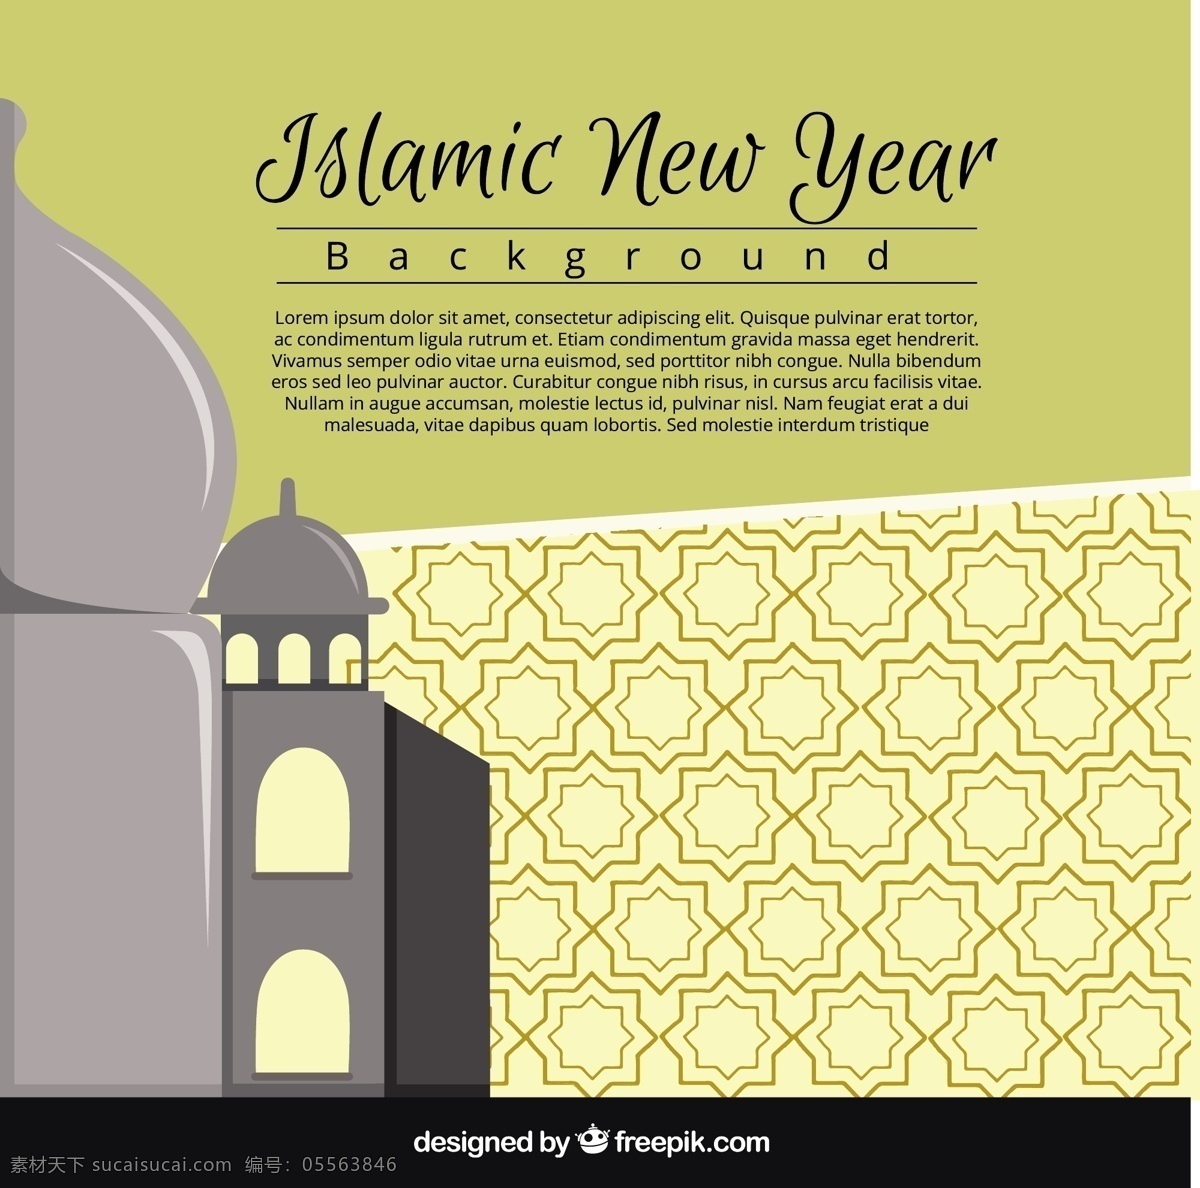 伊斯兰 新年 背景 背景下 伊斯兰新年 开斋节 阿拉伯语 庆典 宗教 穆巴拉克 新的伊斯兰教 年 文化 穆斯林 庆祝 简单的问候 精神